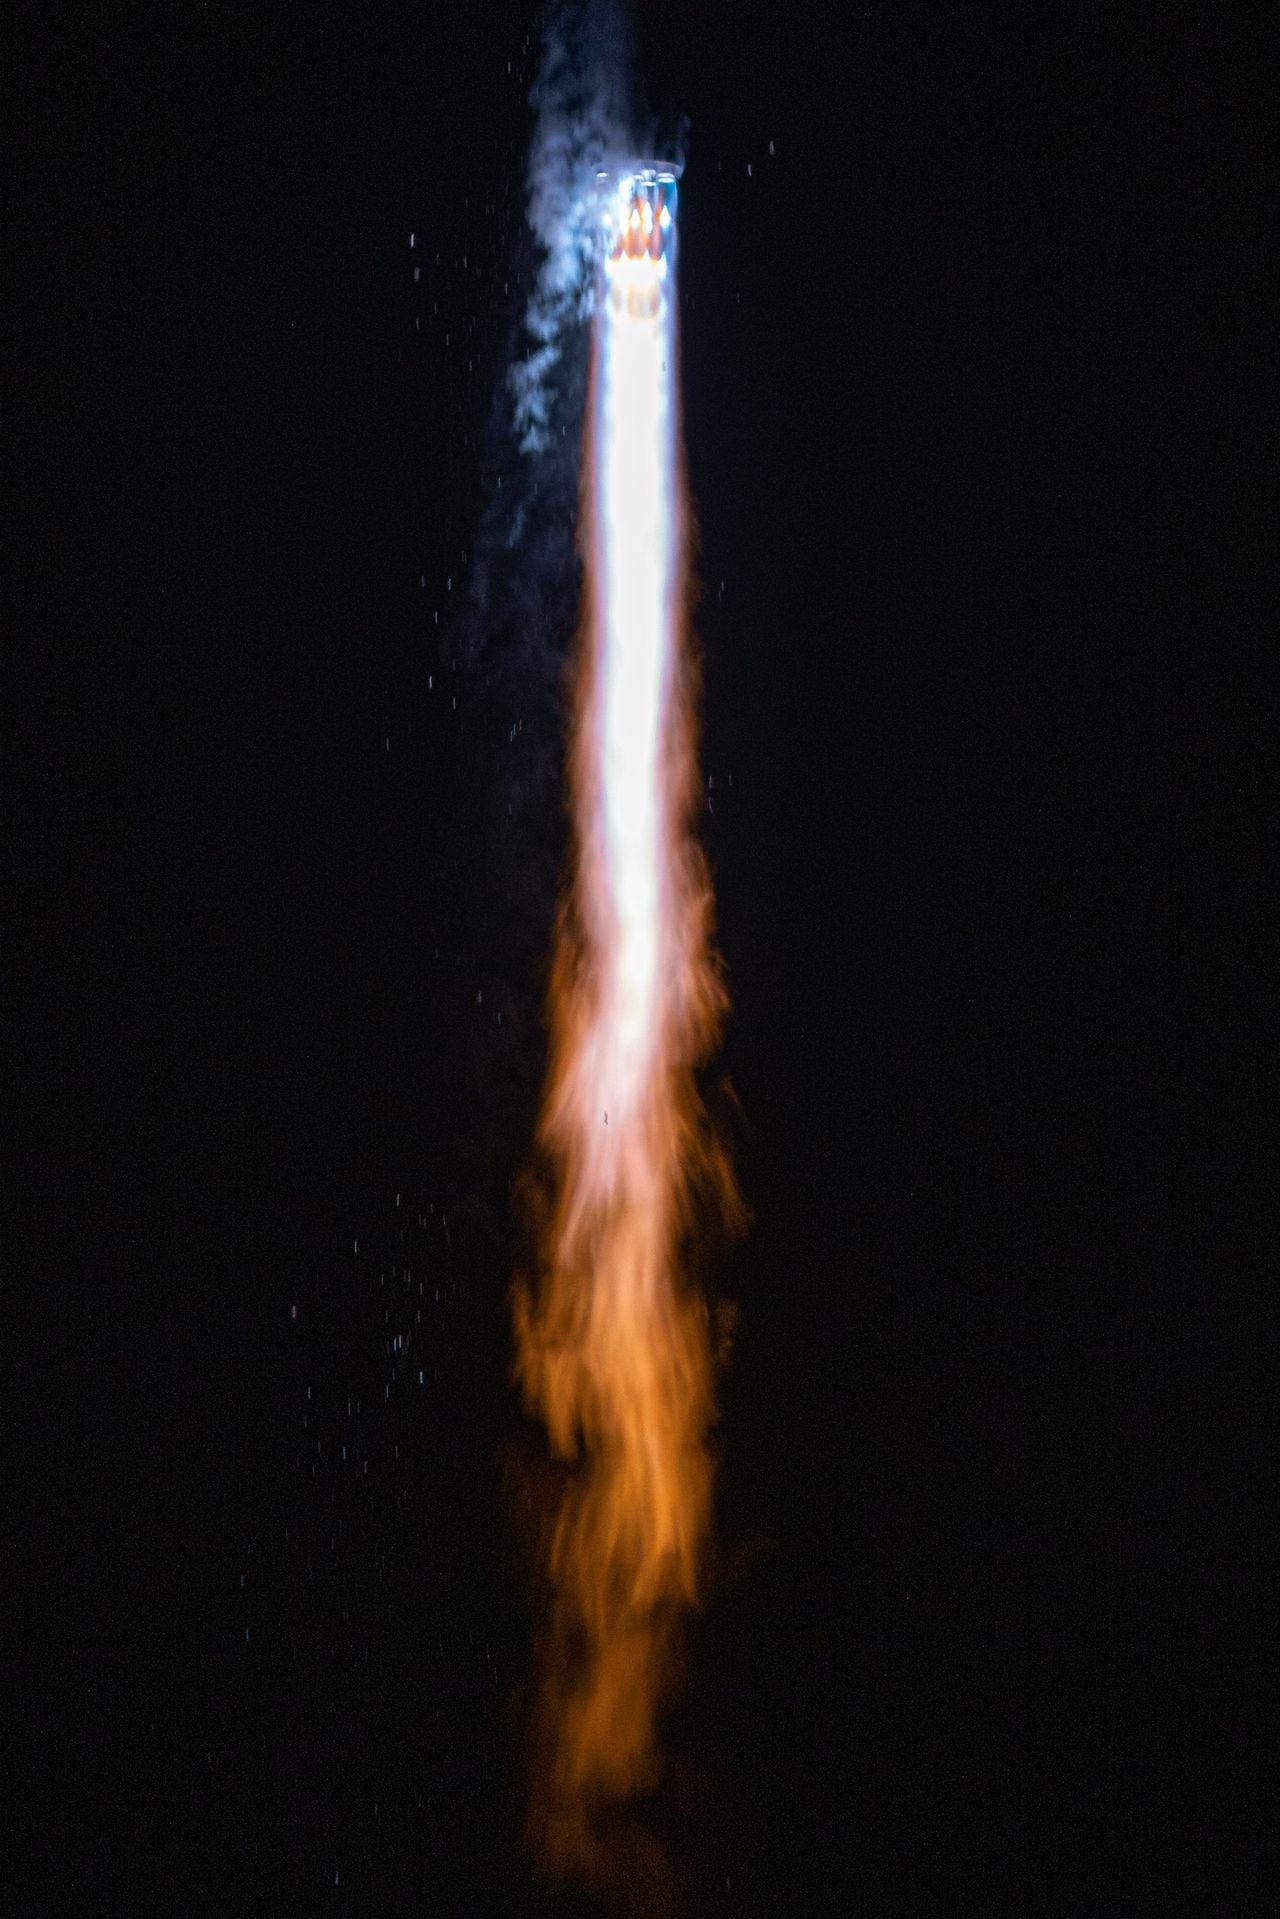 La compañía RrelativitySpace logró llevar al espacio un cohete hecho a partir de impresiones 3D.